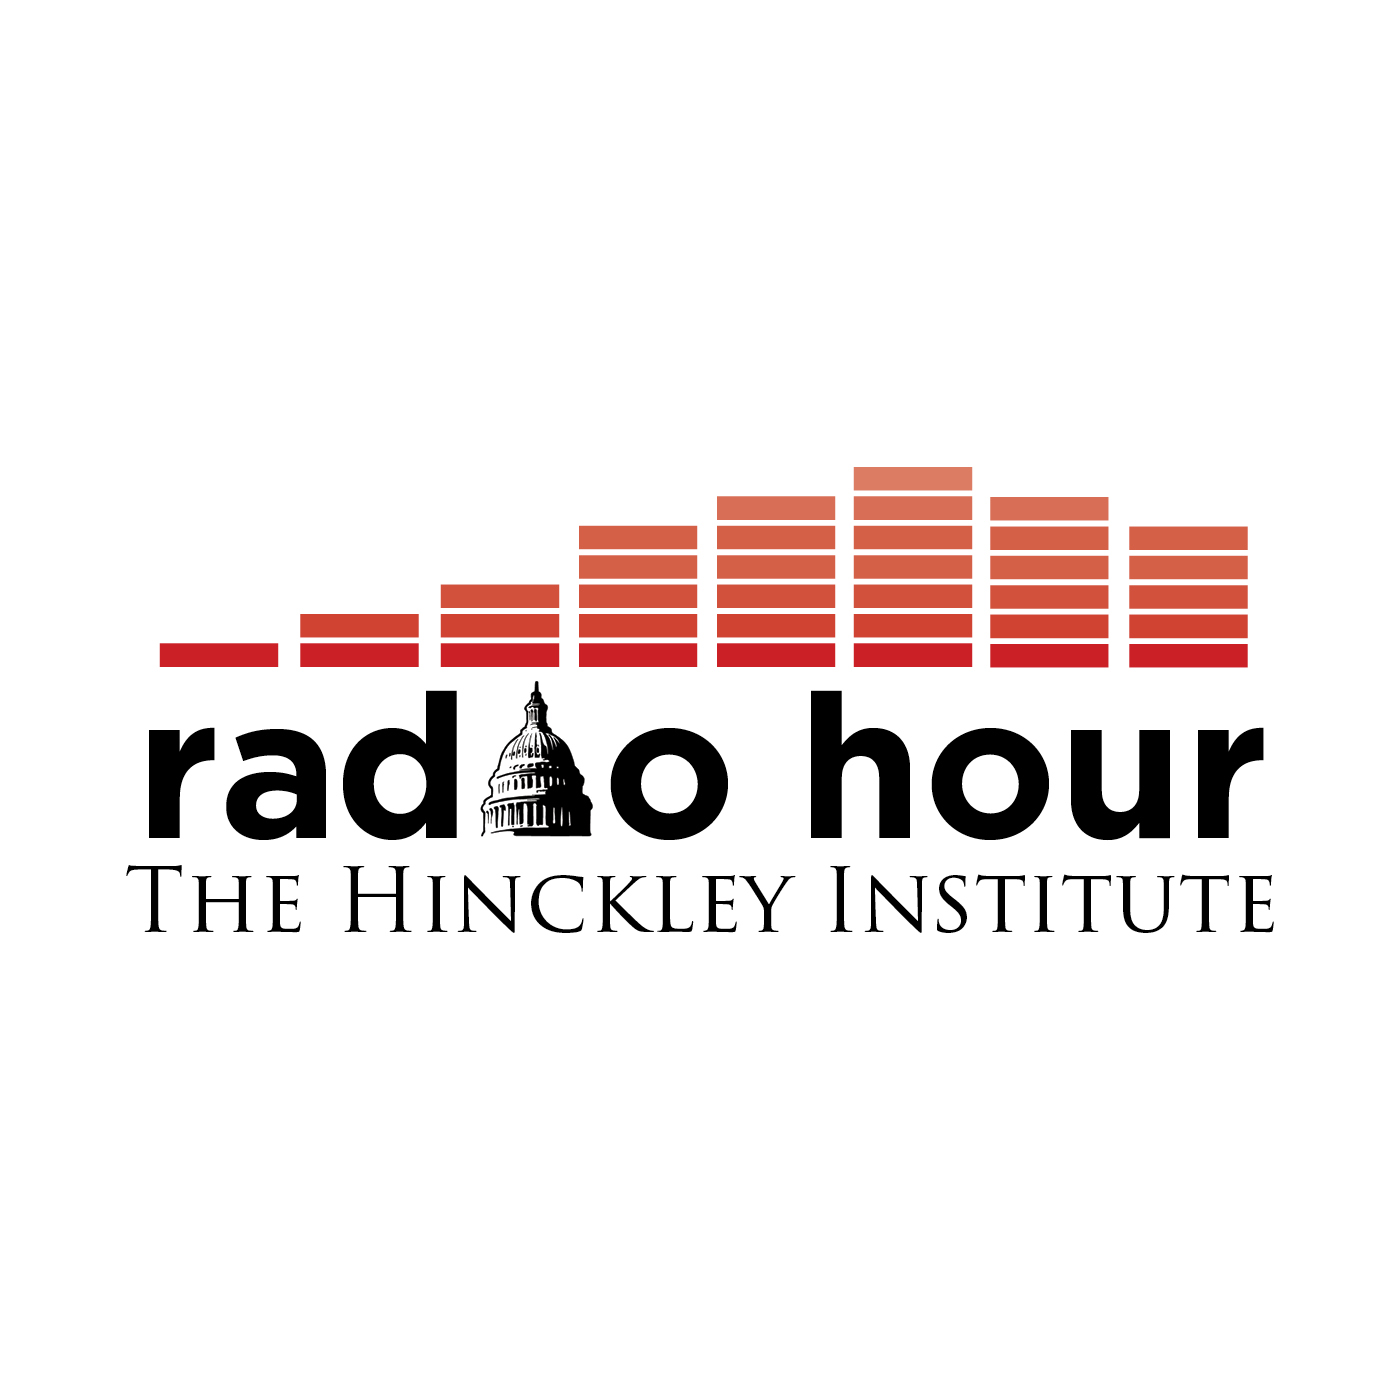 The Hinckley Institute Radio Hour